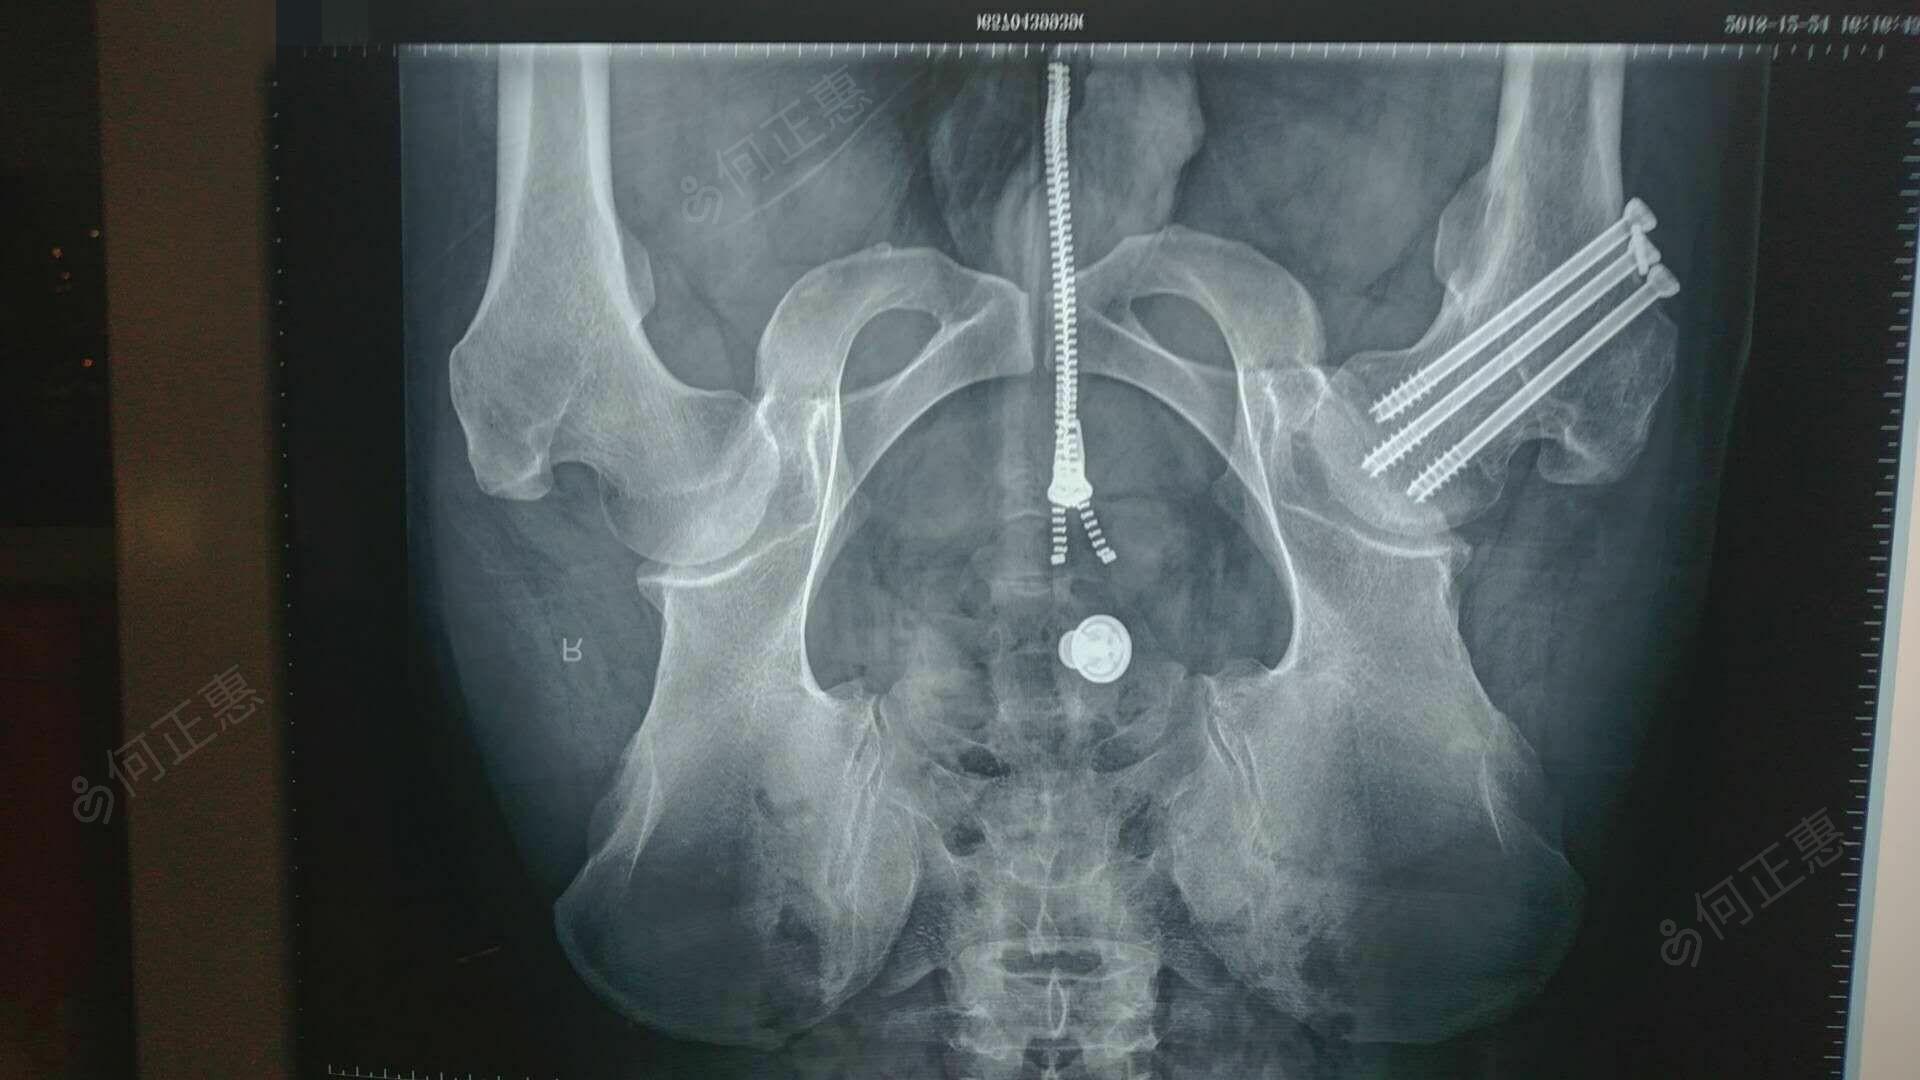 尺桡骨骨折手法复位 - 骨科与显微外科专业讨论版 - 爱爱医医学论坛